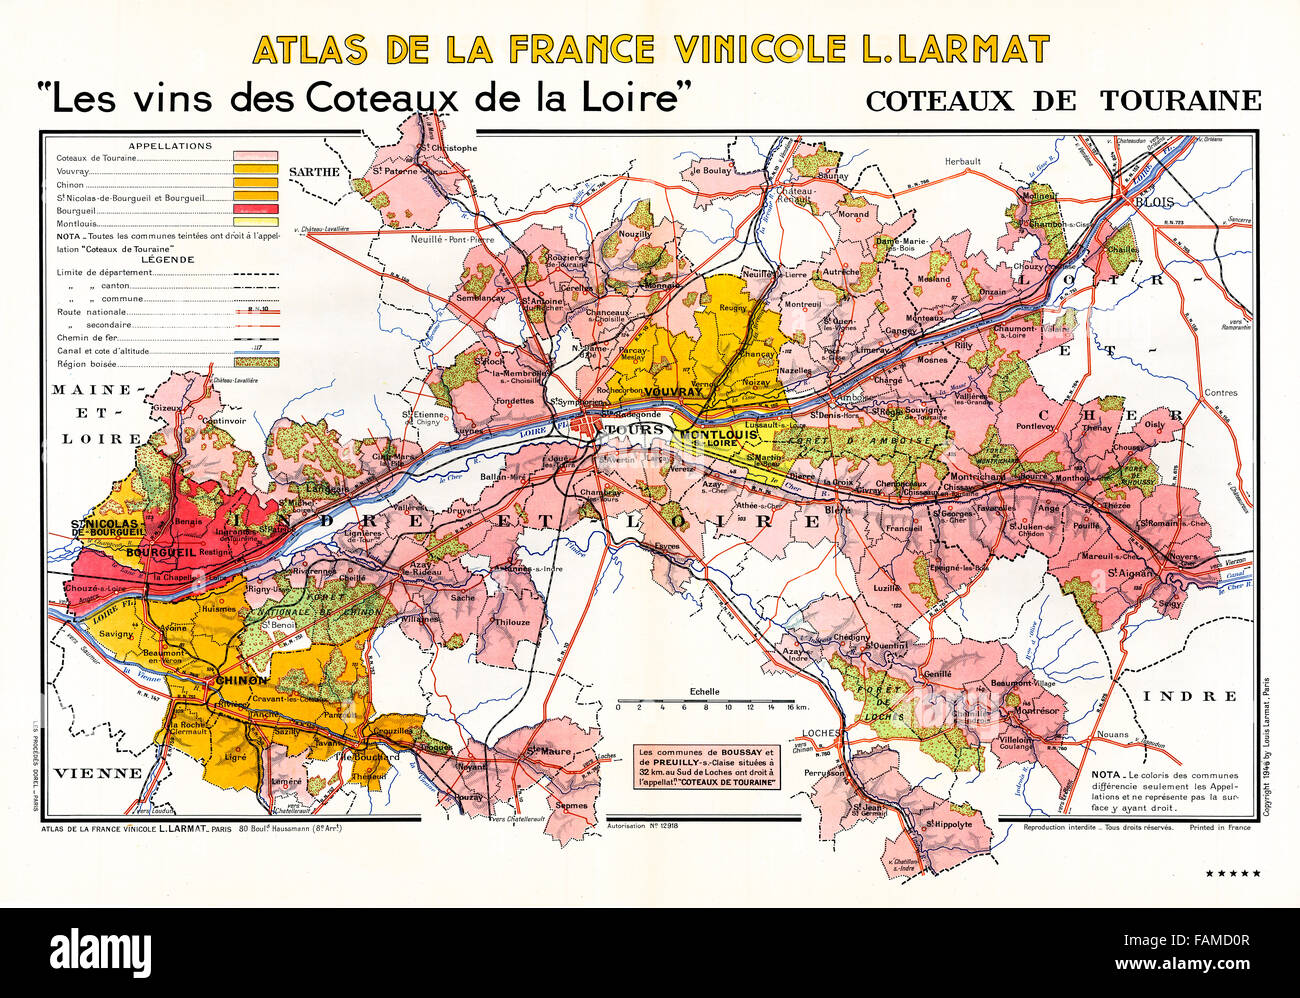 Coteaux de Touraine, Atlas des vins de la vallée de la Loire montrant les vignobles, villages et villes sur les collines le long de la rivière Banque D'Images